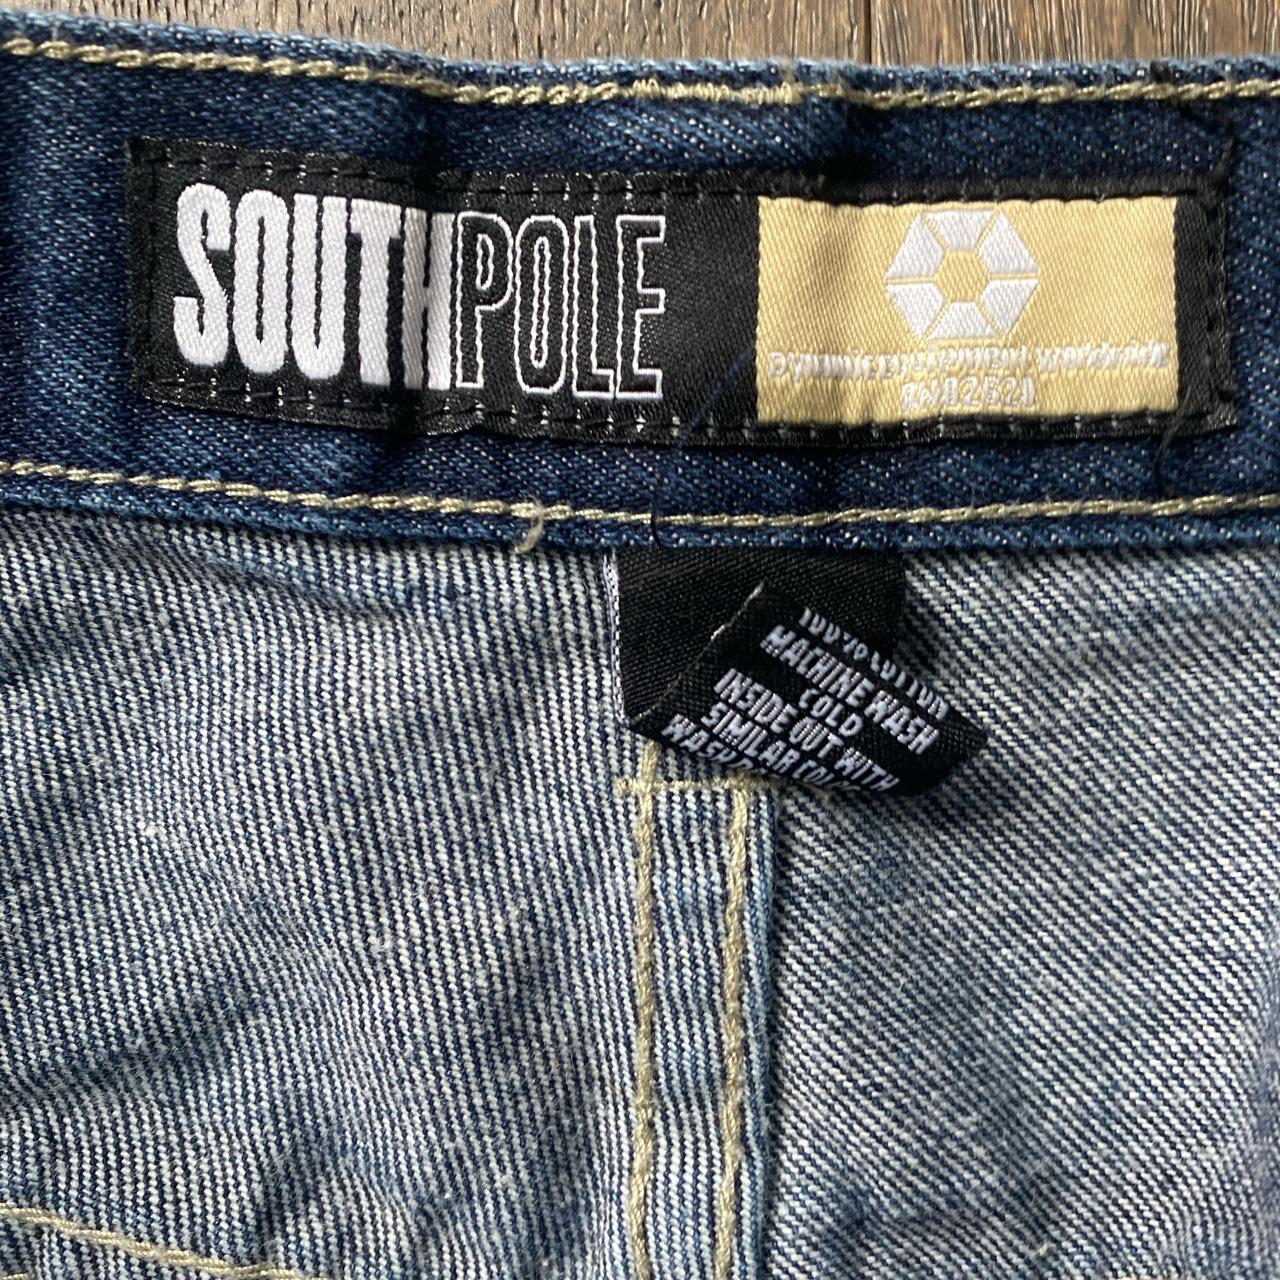 Super rare carpenter southpole jeans size 32/26 cut,... - Depop